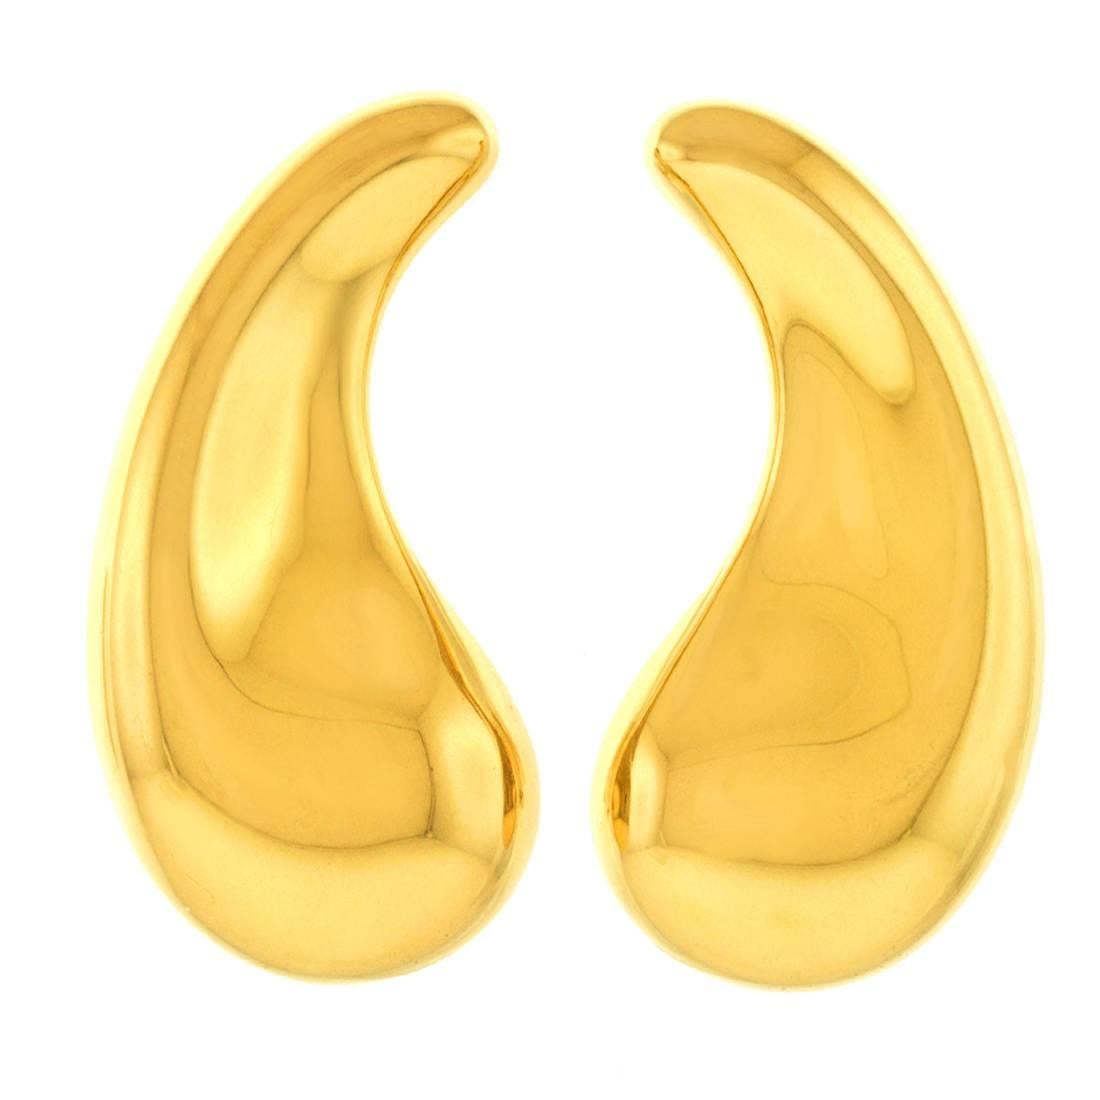 Elsa Peretti for Tiffany Monumental Teardrop Earrings in Gold